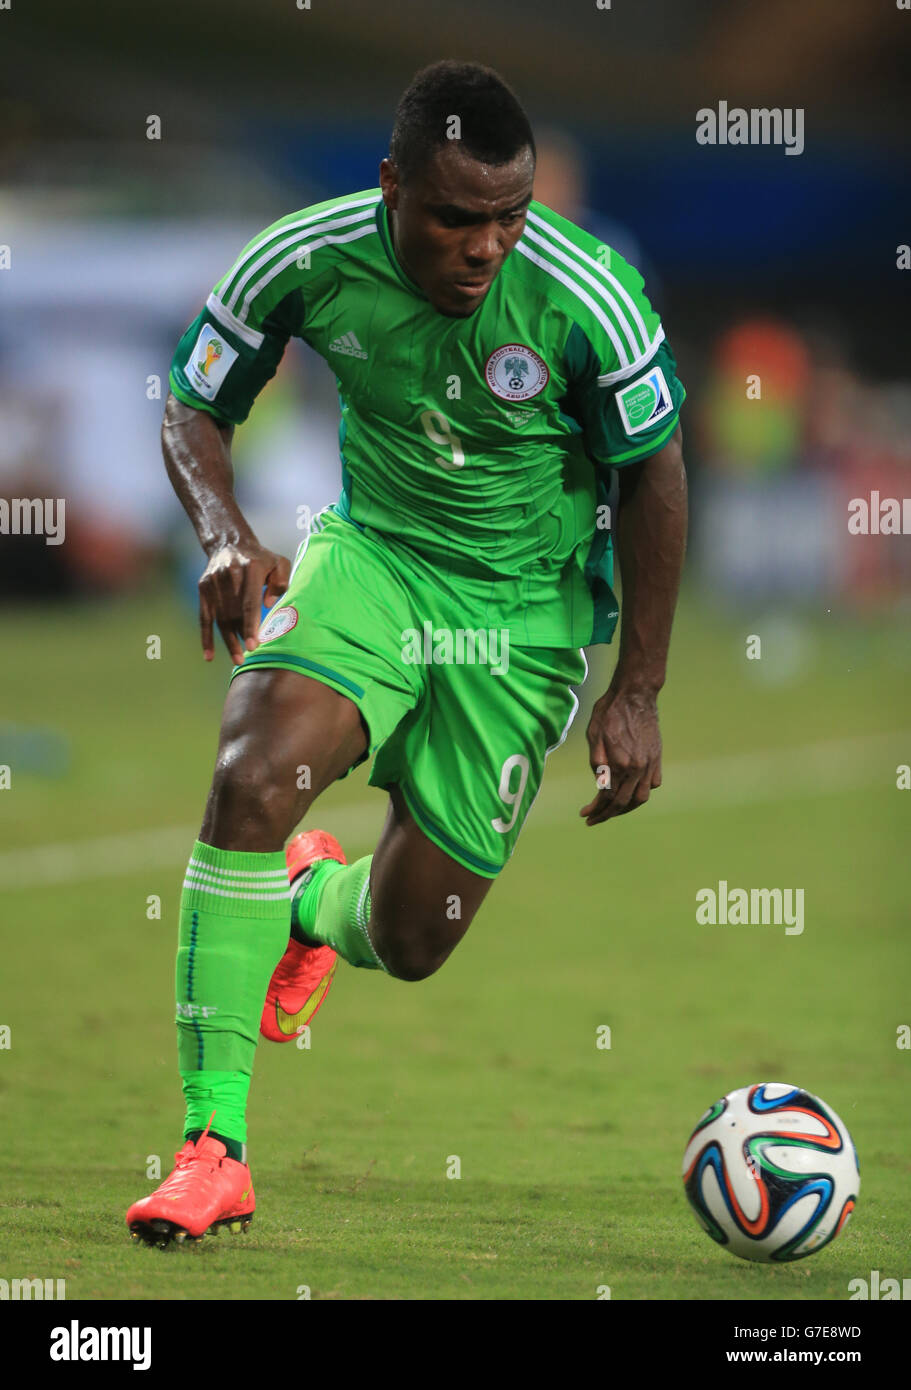 Fußball - FIFA Fußball-Weltmeisterschaft 2014 - Gruppe F - Nigeria - Bosnien und Herzegowina - Arena Pantanal. Emmanuel Emenike, Nigeria Stockfoto